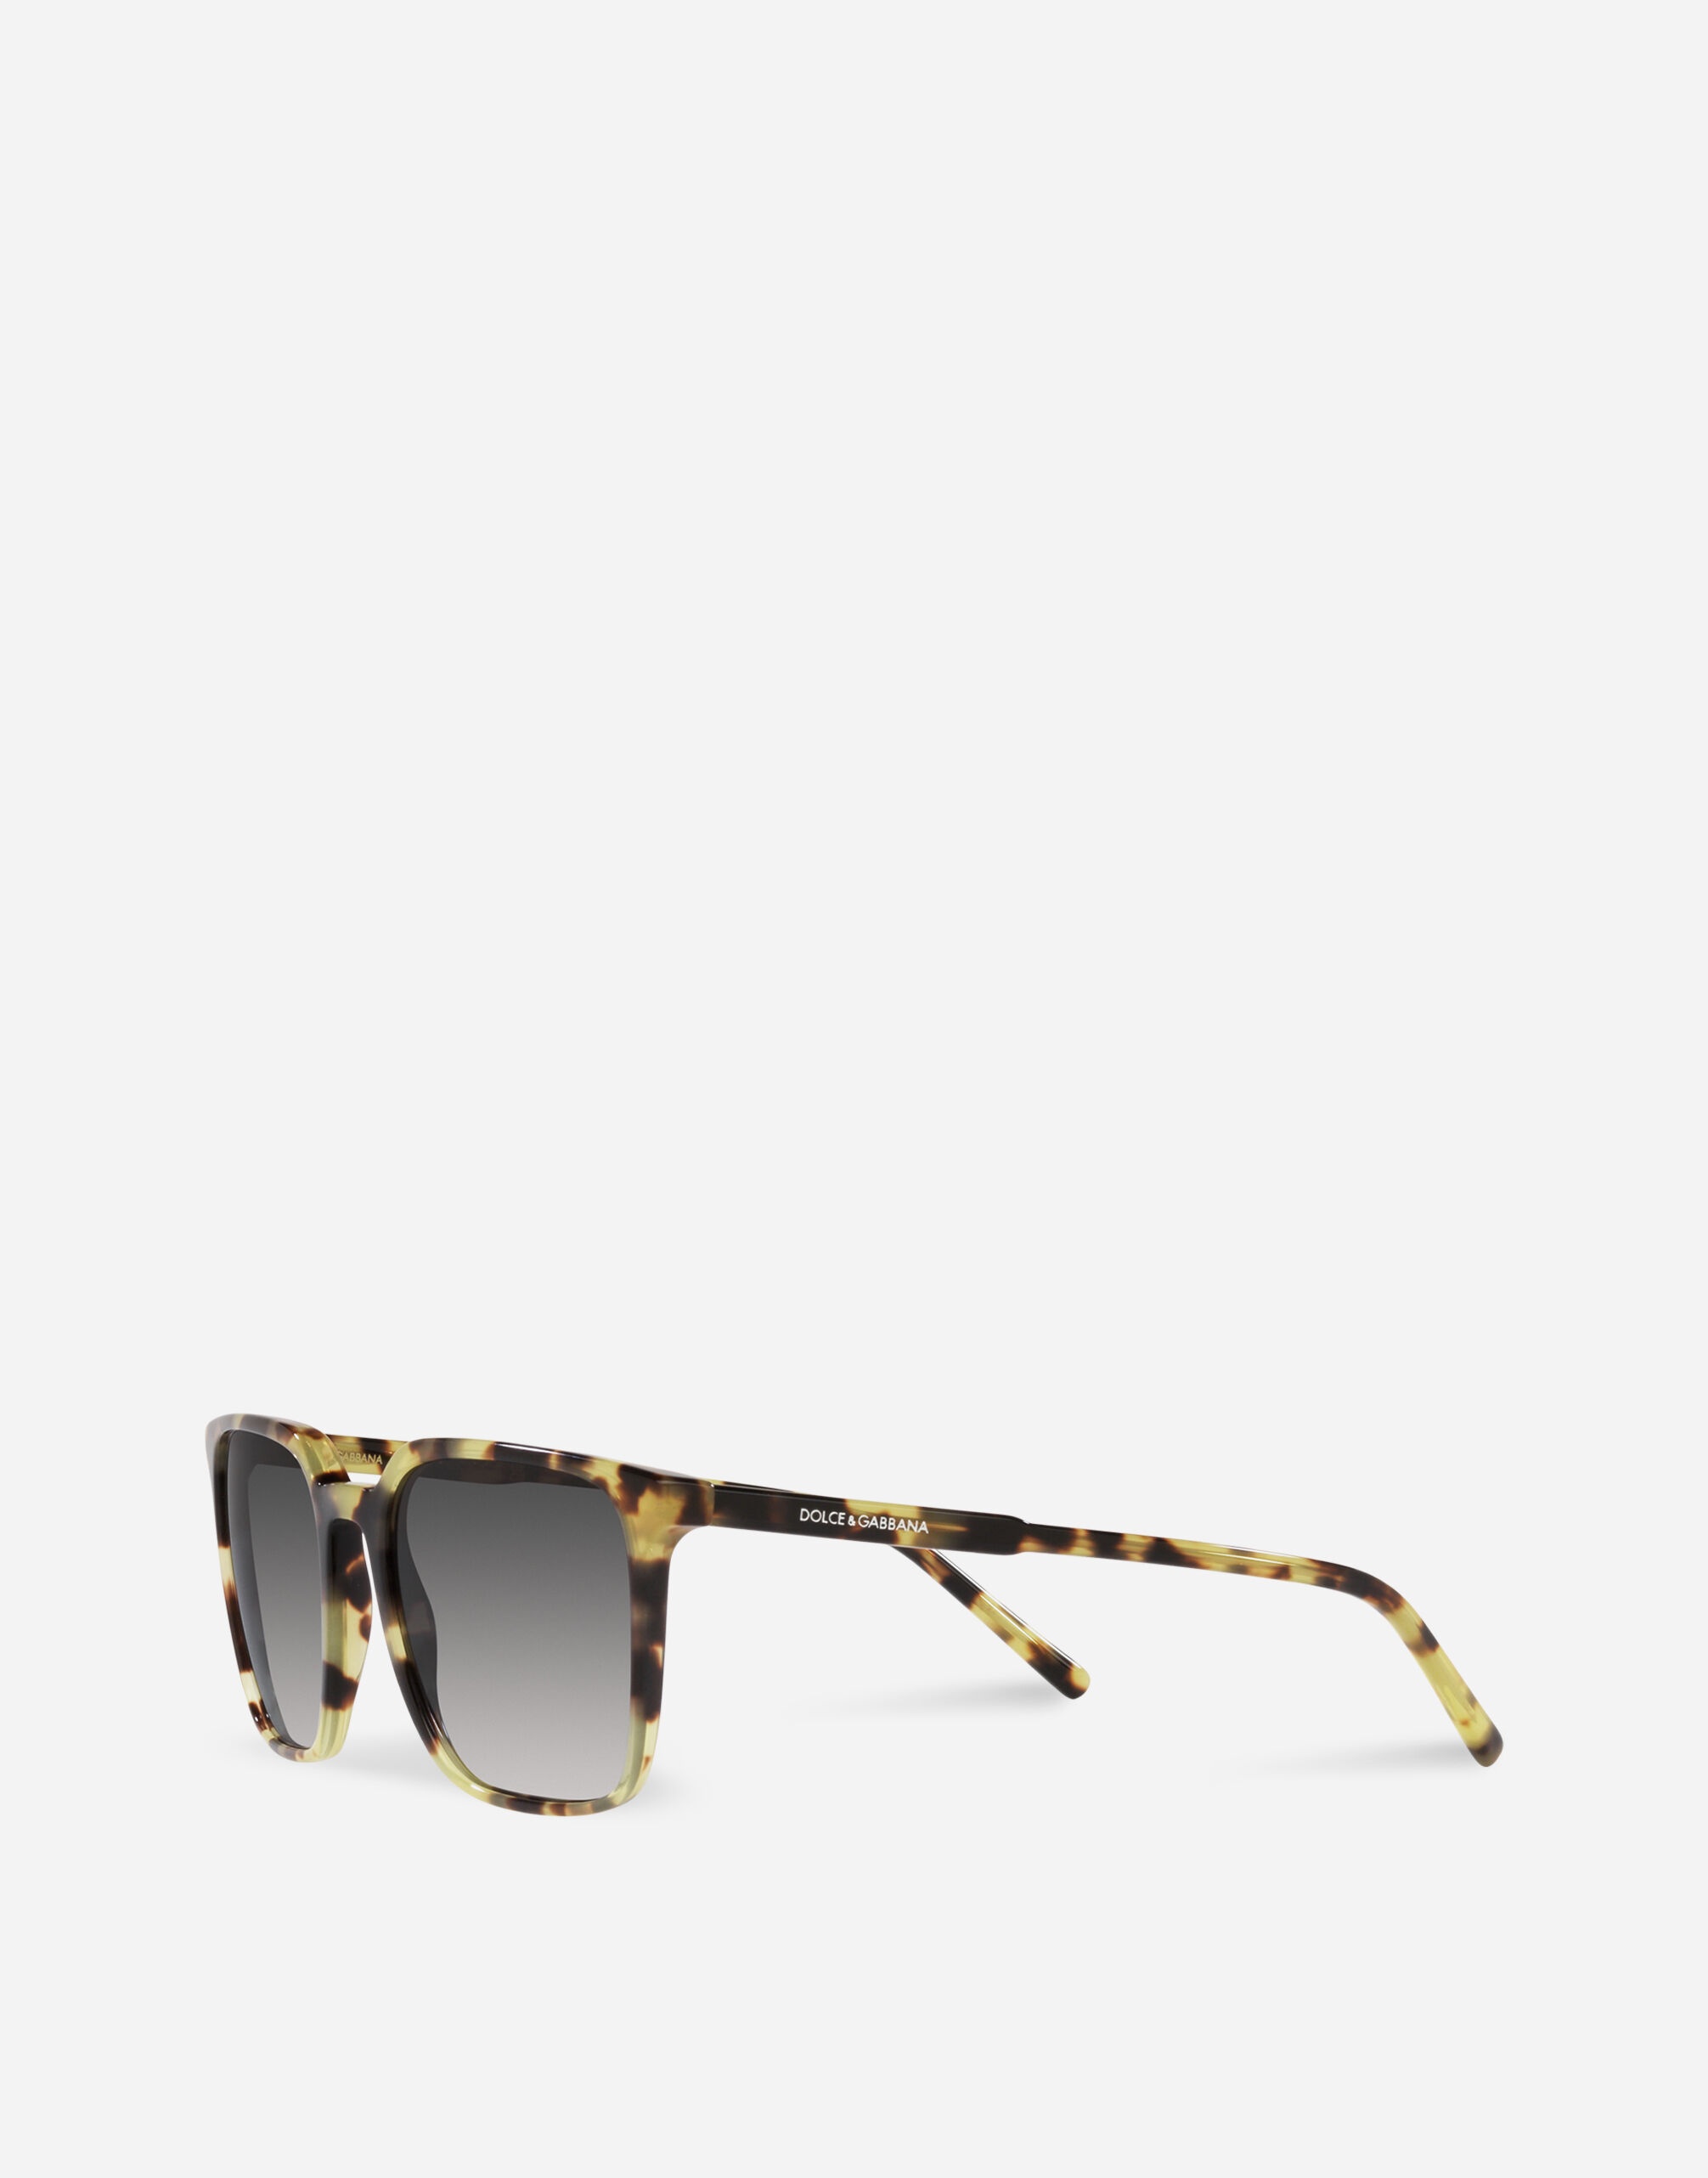 Thin profile sunglasses - 2